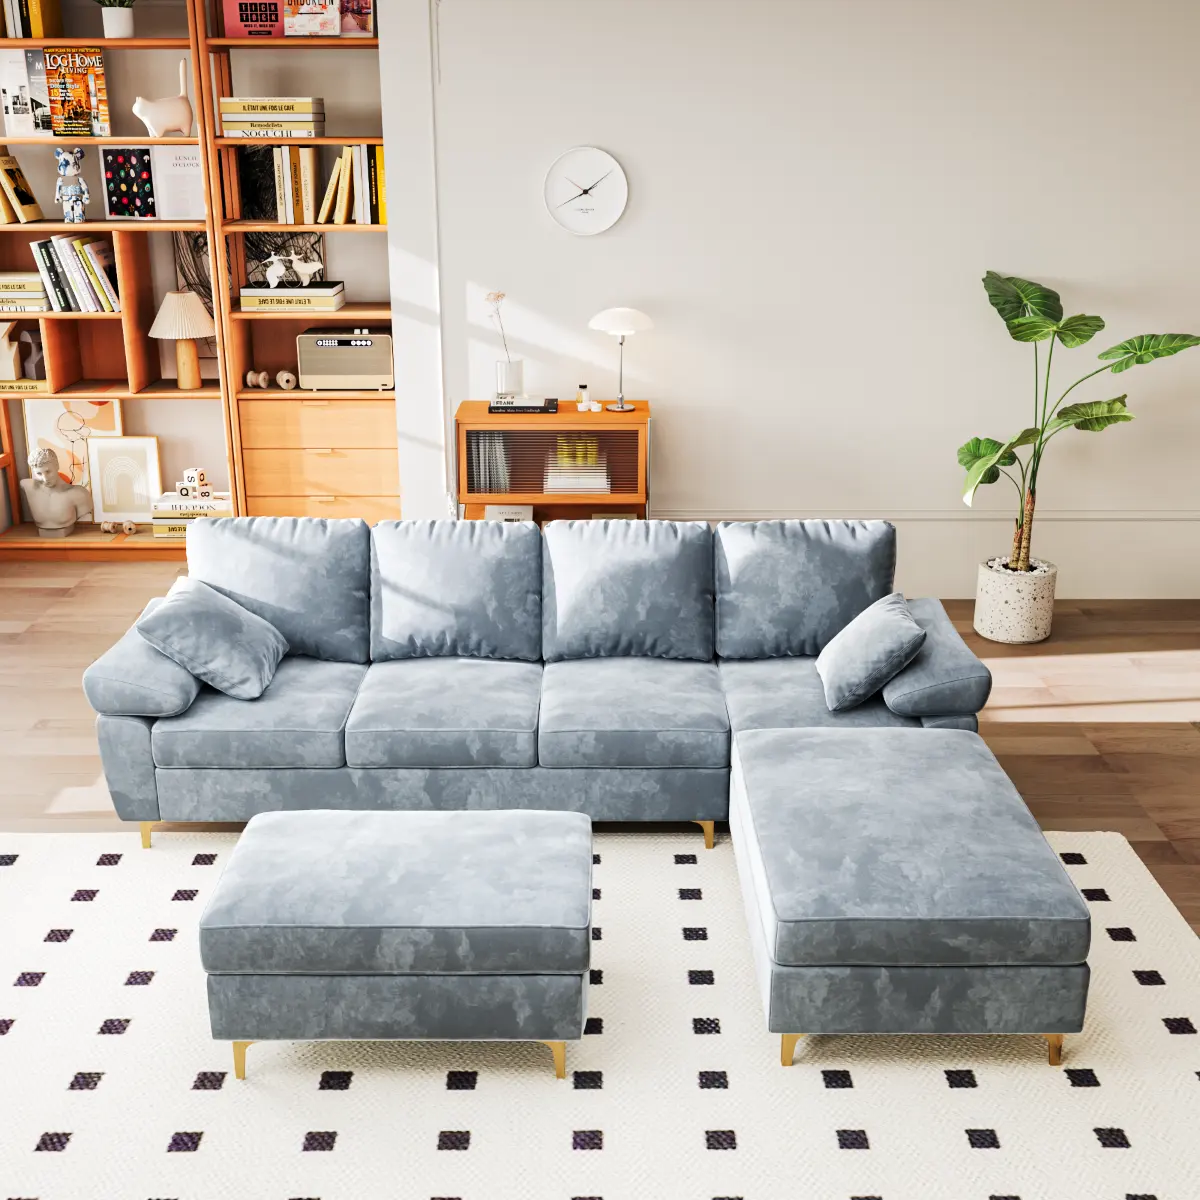 أريكة مقسمة على شكل حرف L مكونة من 3 مقاعد مصنوعة من نسيج الكتان أريكة صغيرة على الطراز العثماني قابلة للنقل مناسبة للشقق الصغيرة وغرف المعيشة بالمنزل